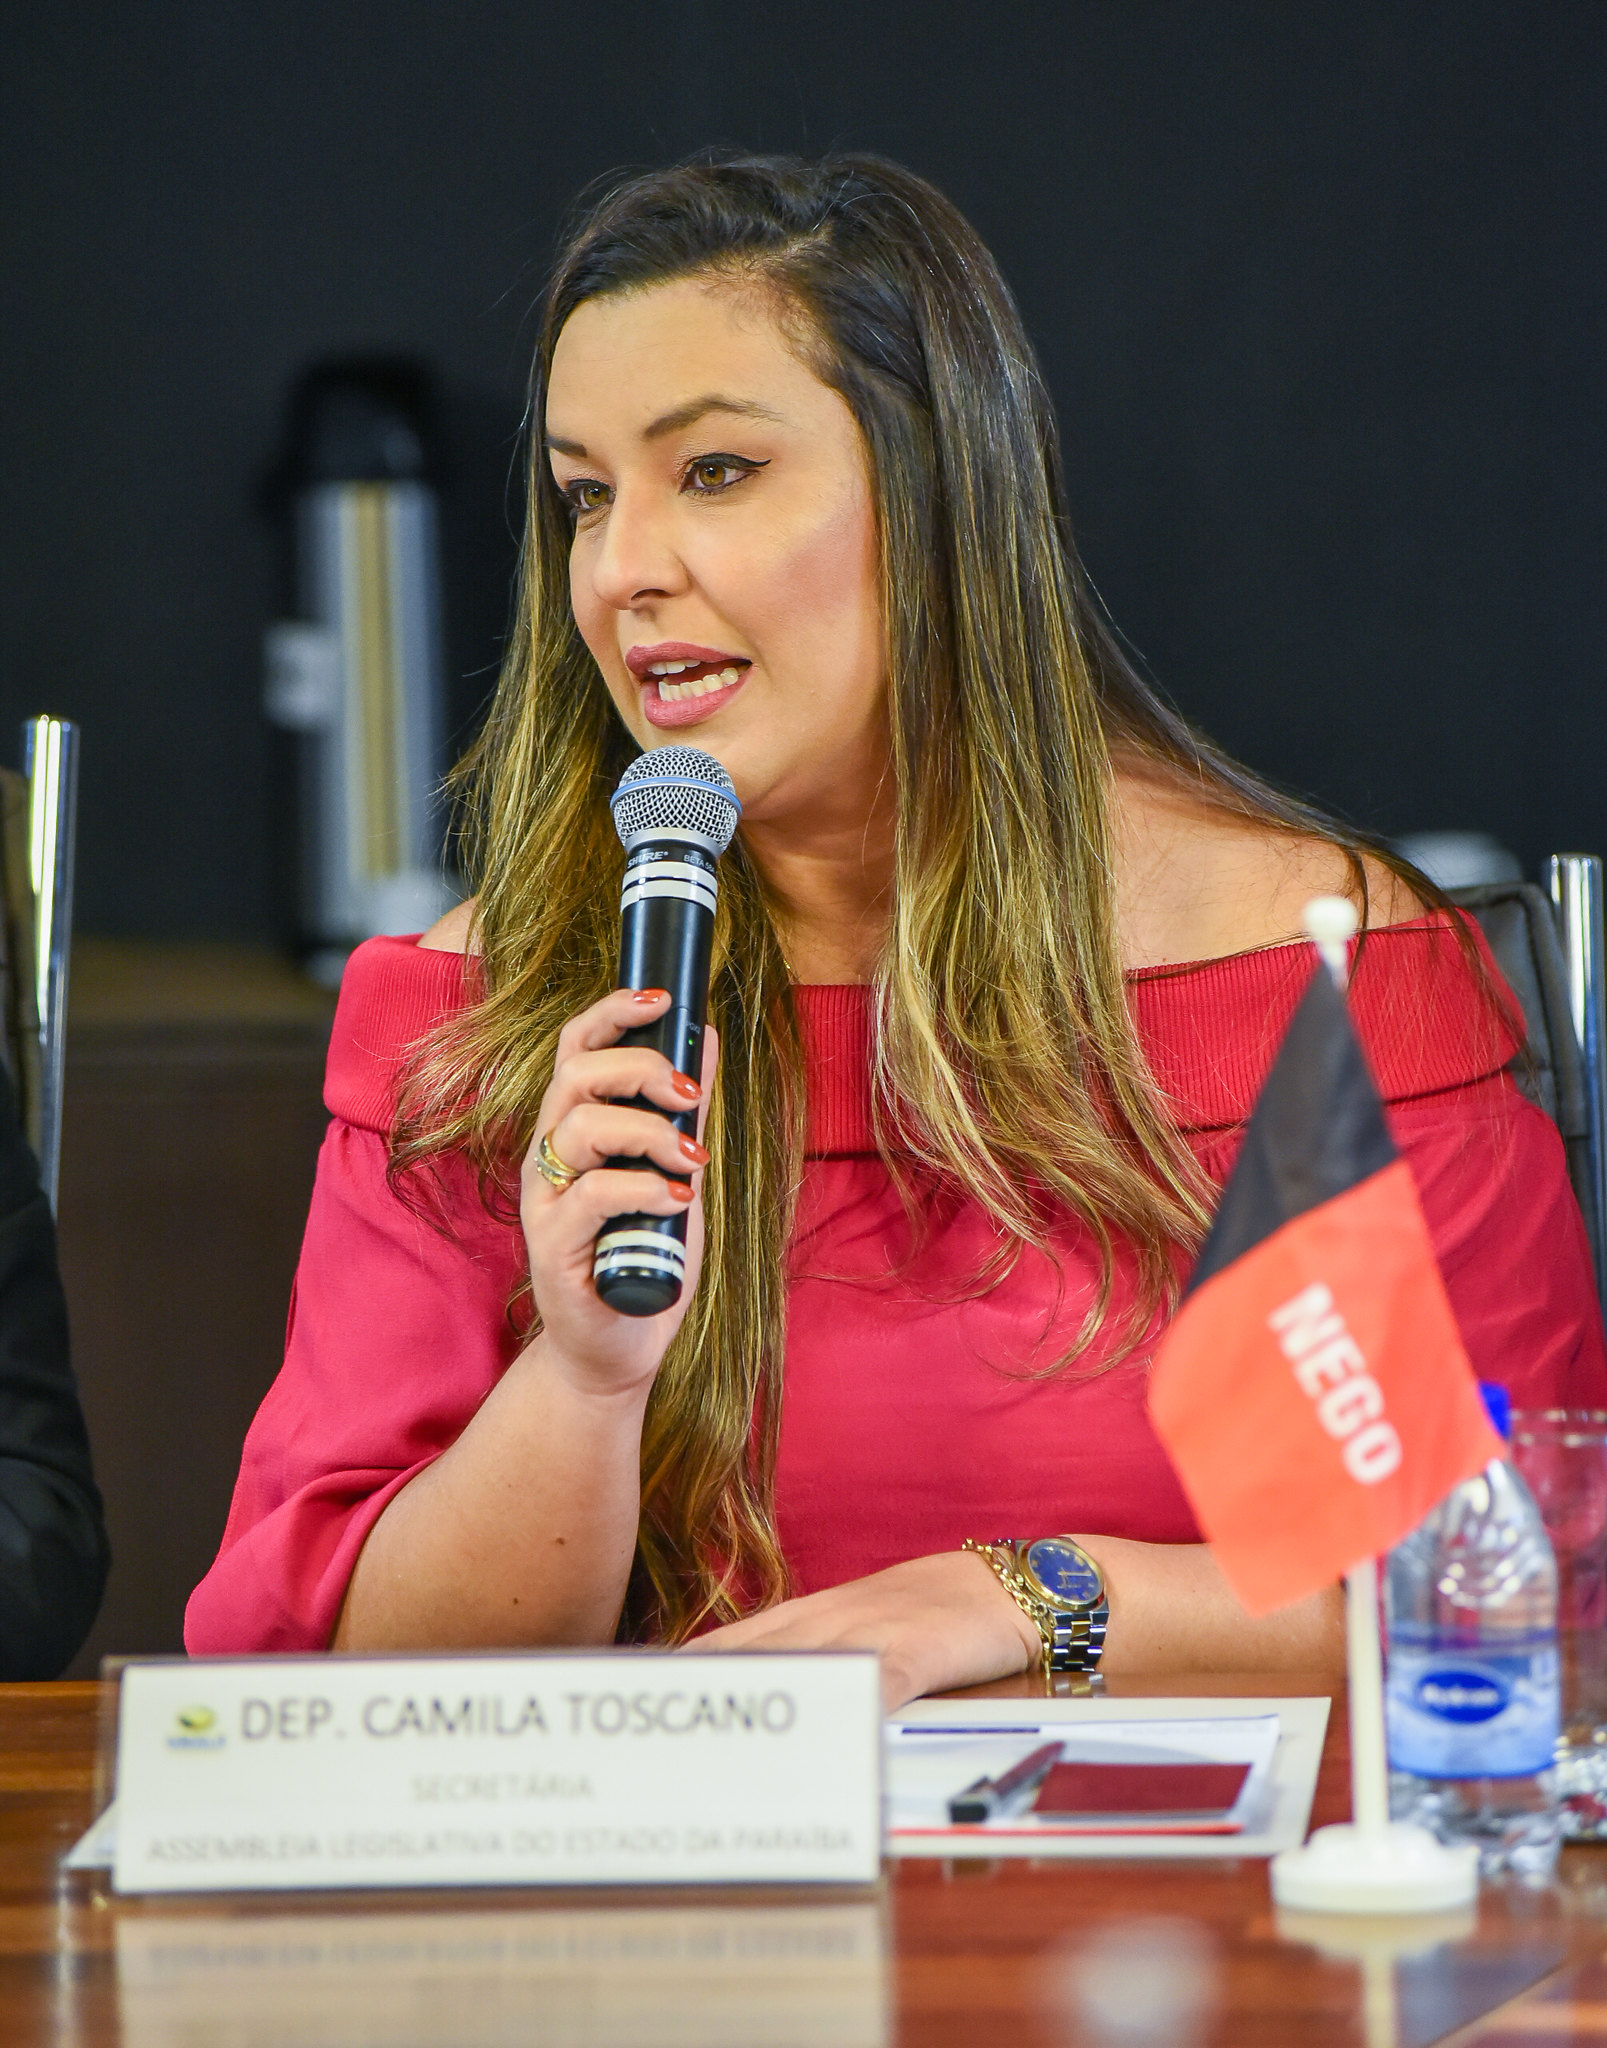 Deputada Camila Toscano toma posse como secretária-geral da Unale na Paraíba e participa de reunião de planejamento